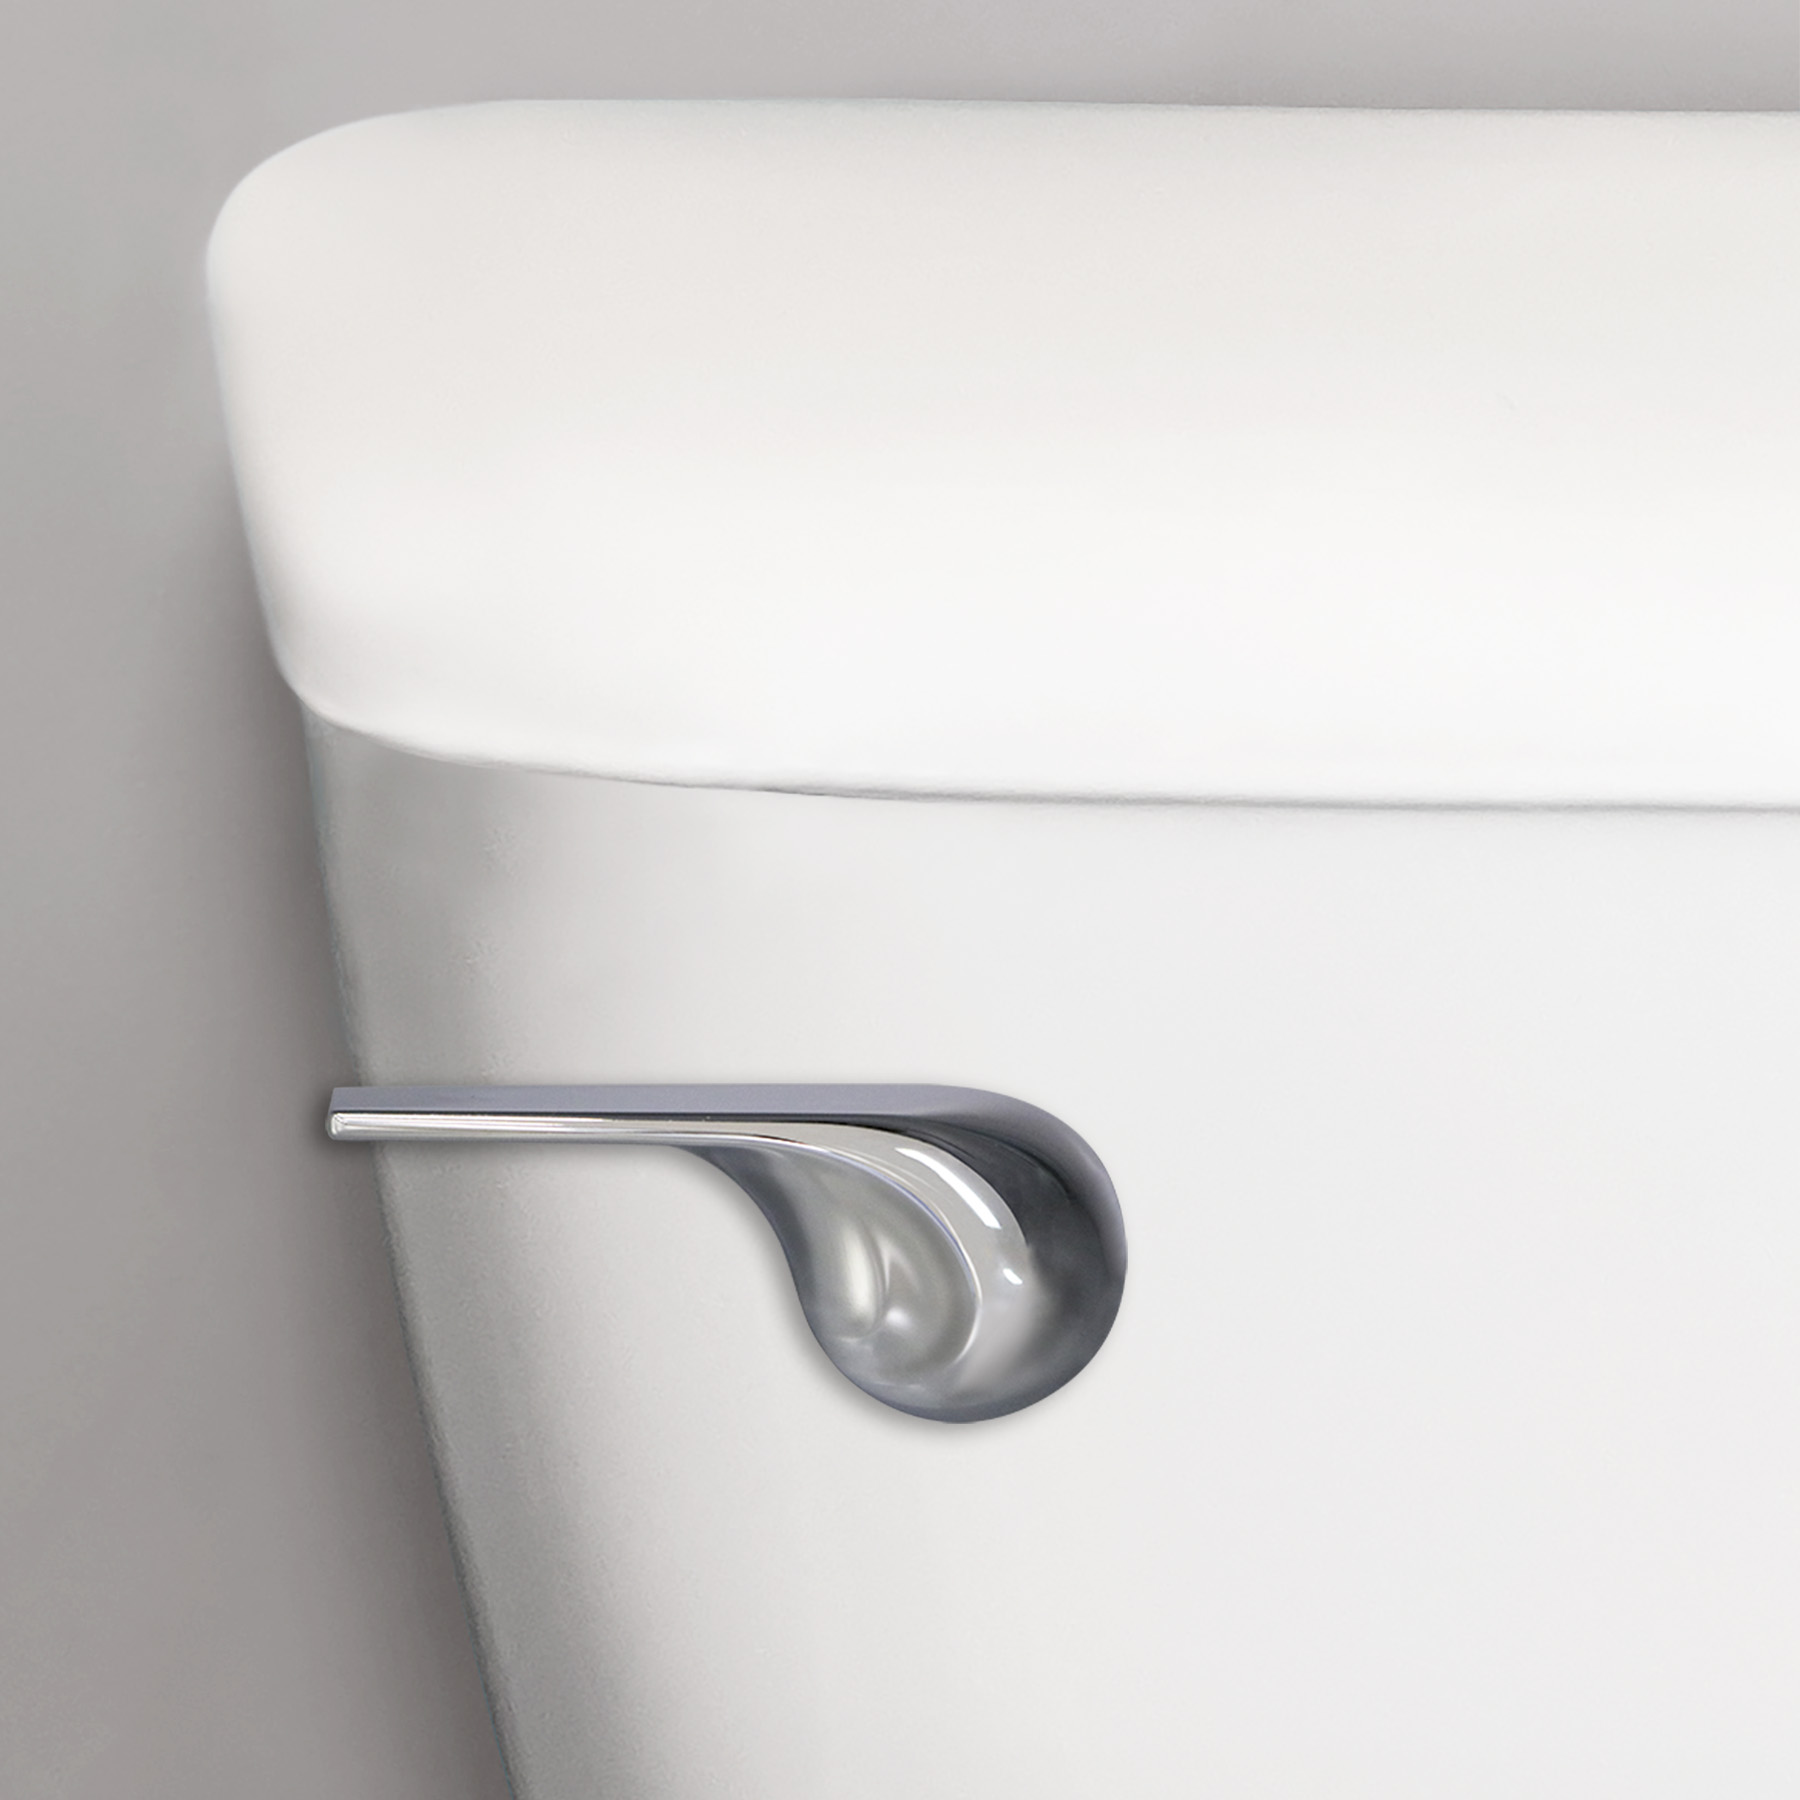 Wave style chrome toilet handle on toilet tank